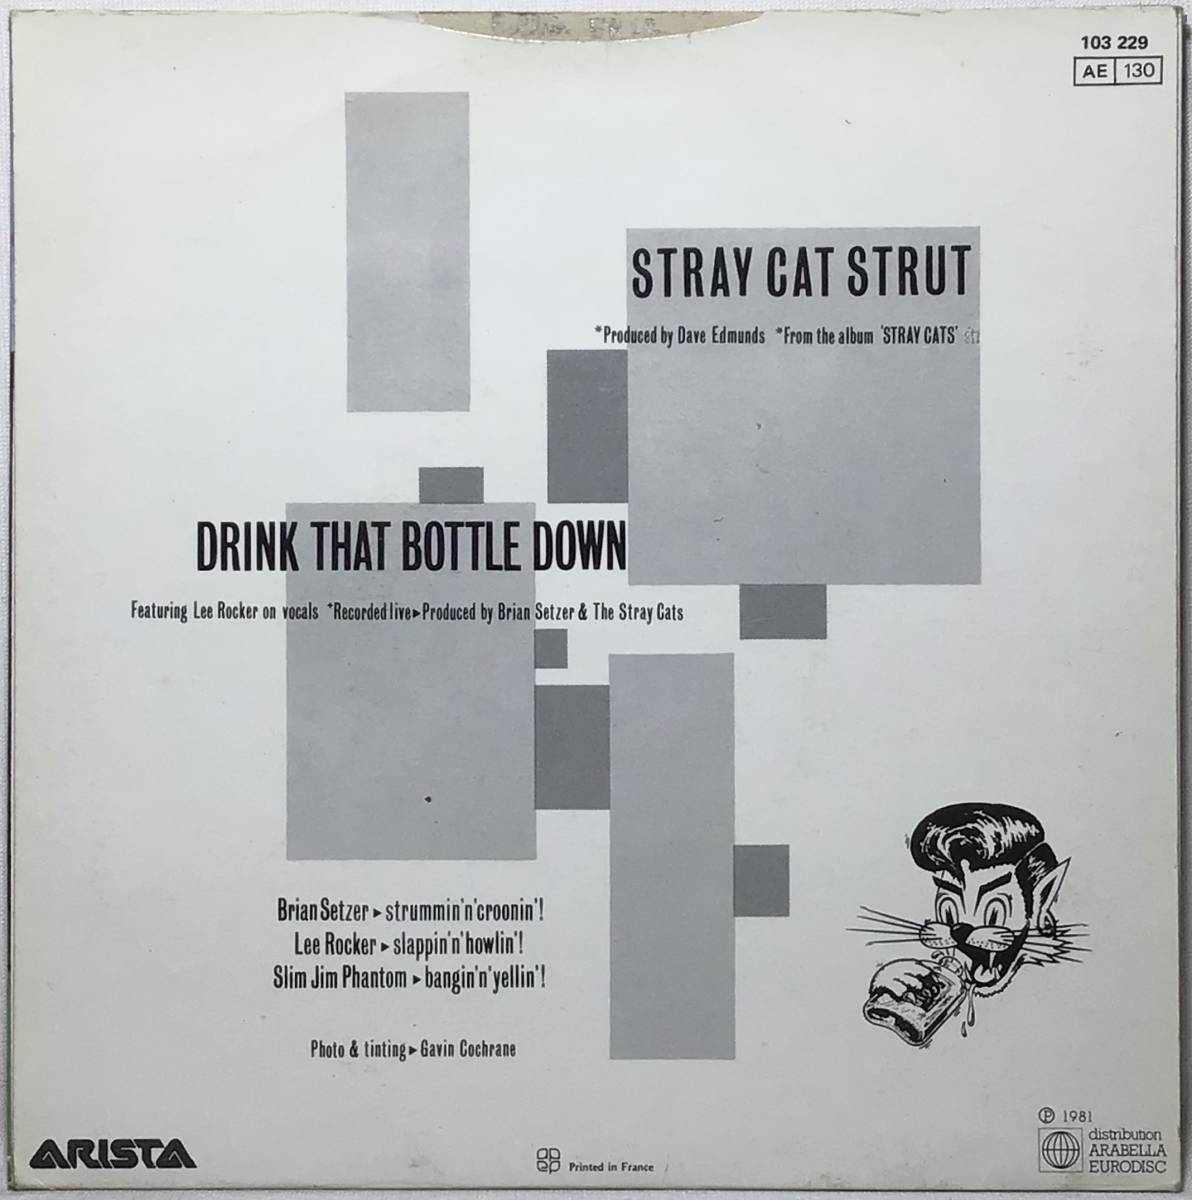 【仏7】 STRAY CATS ストレイキャッツ STRAY CAT STRUT / DRINK THAT BOTTLE DOWN 1981 フランス盤 7インチシングルレコード EP 45 試聴済の画像2